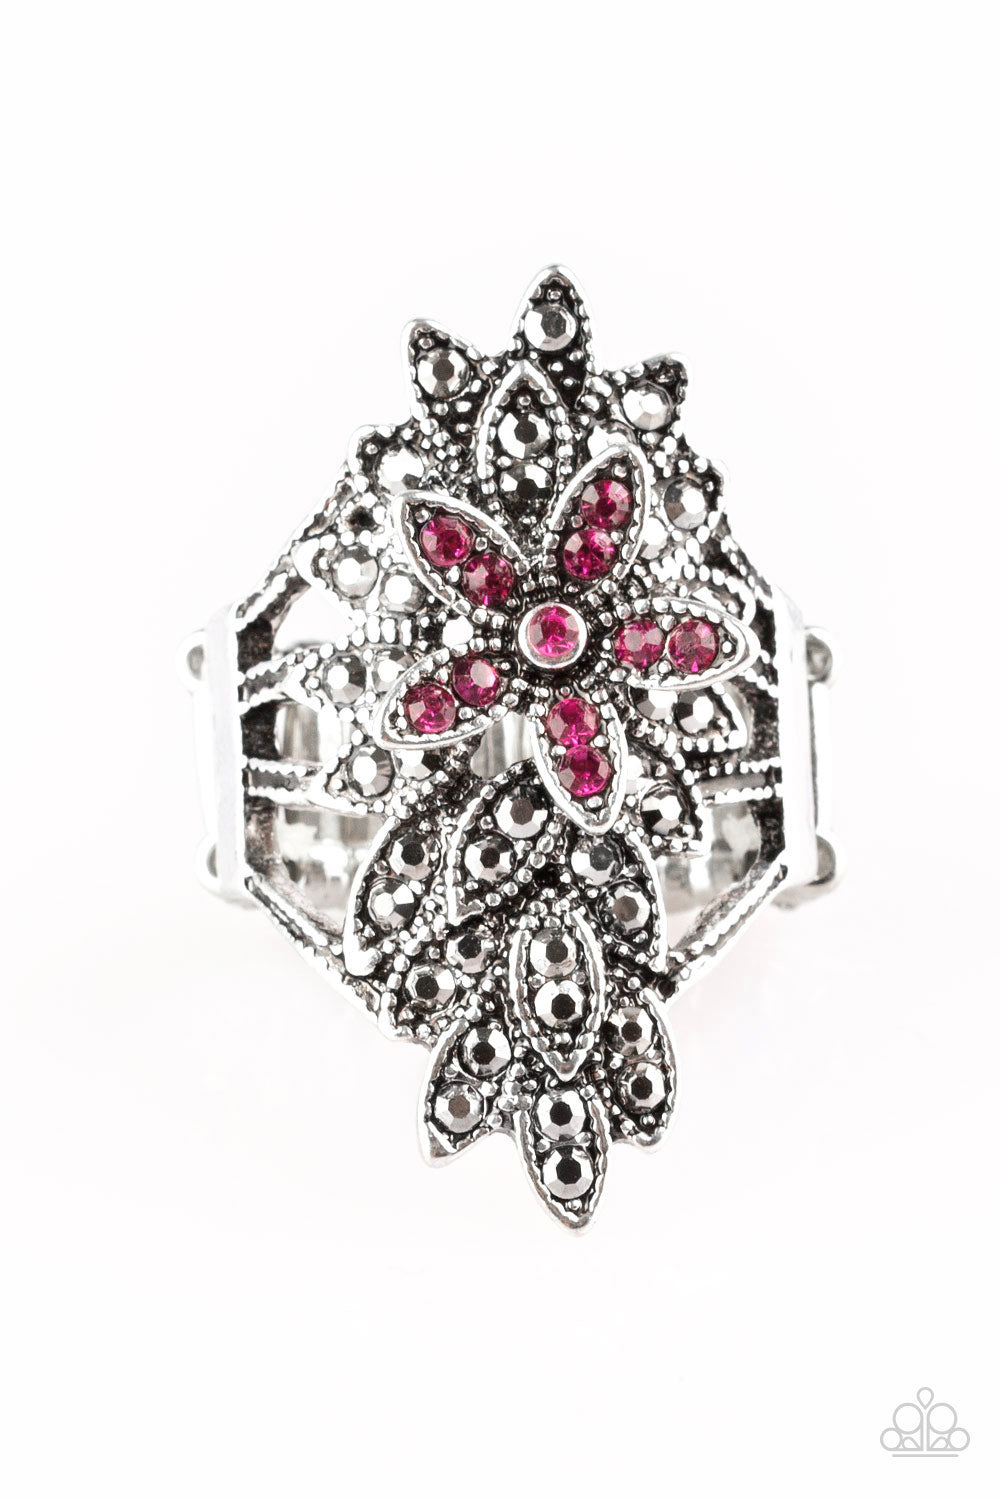 Formal Floral Pink Ring - Daria's Blings N Things